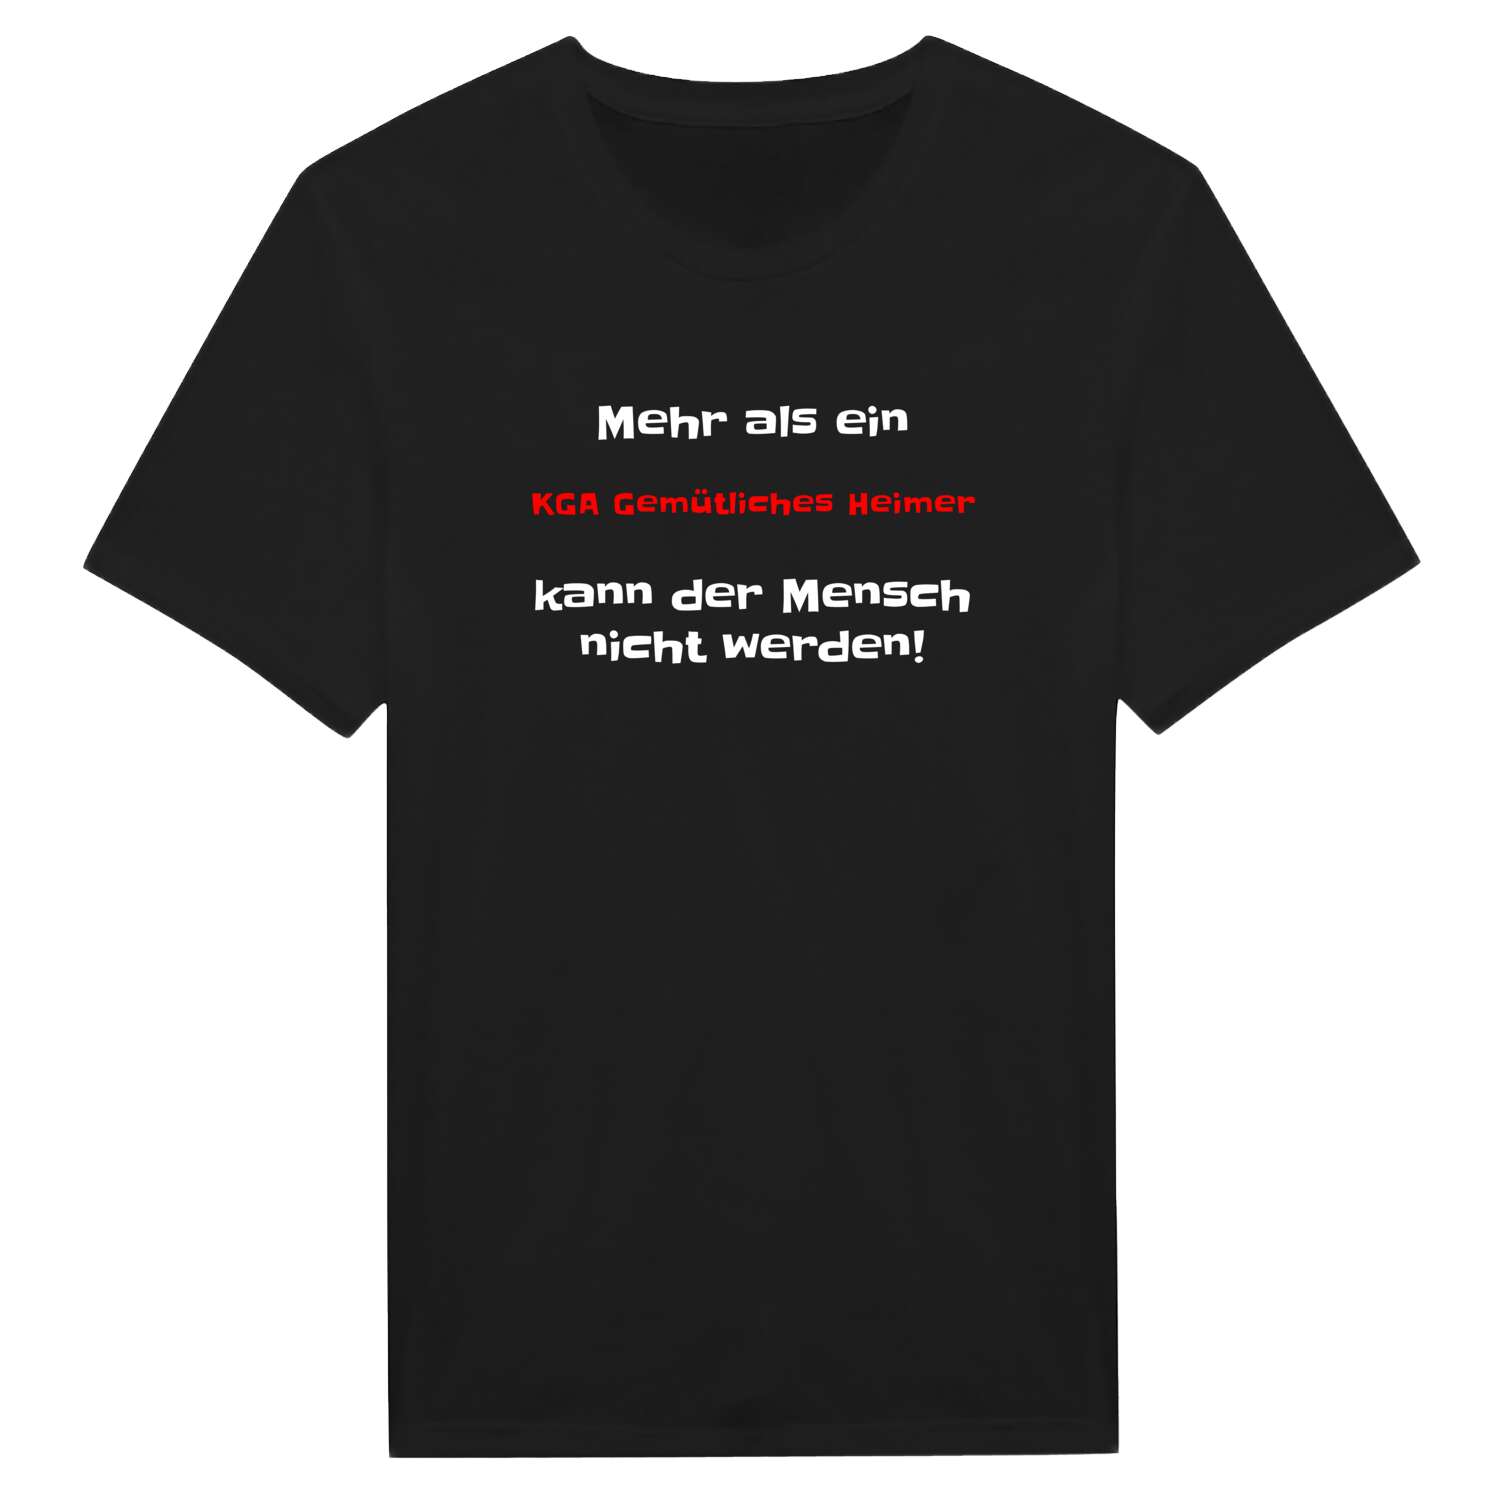 KGA Gemütliches Heim T-Shirt »Mehr als ein«